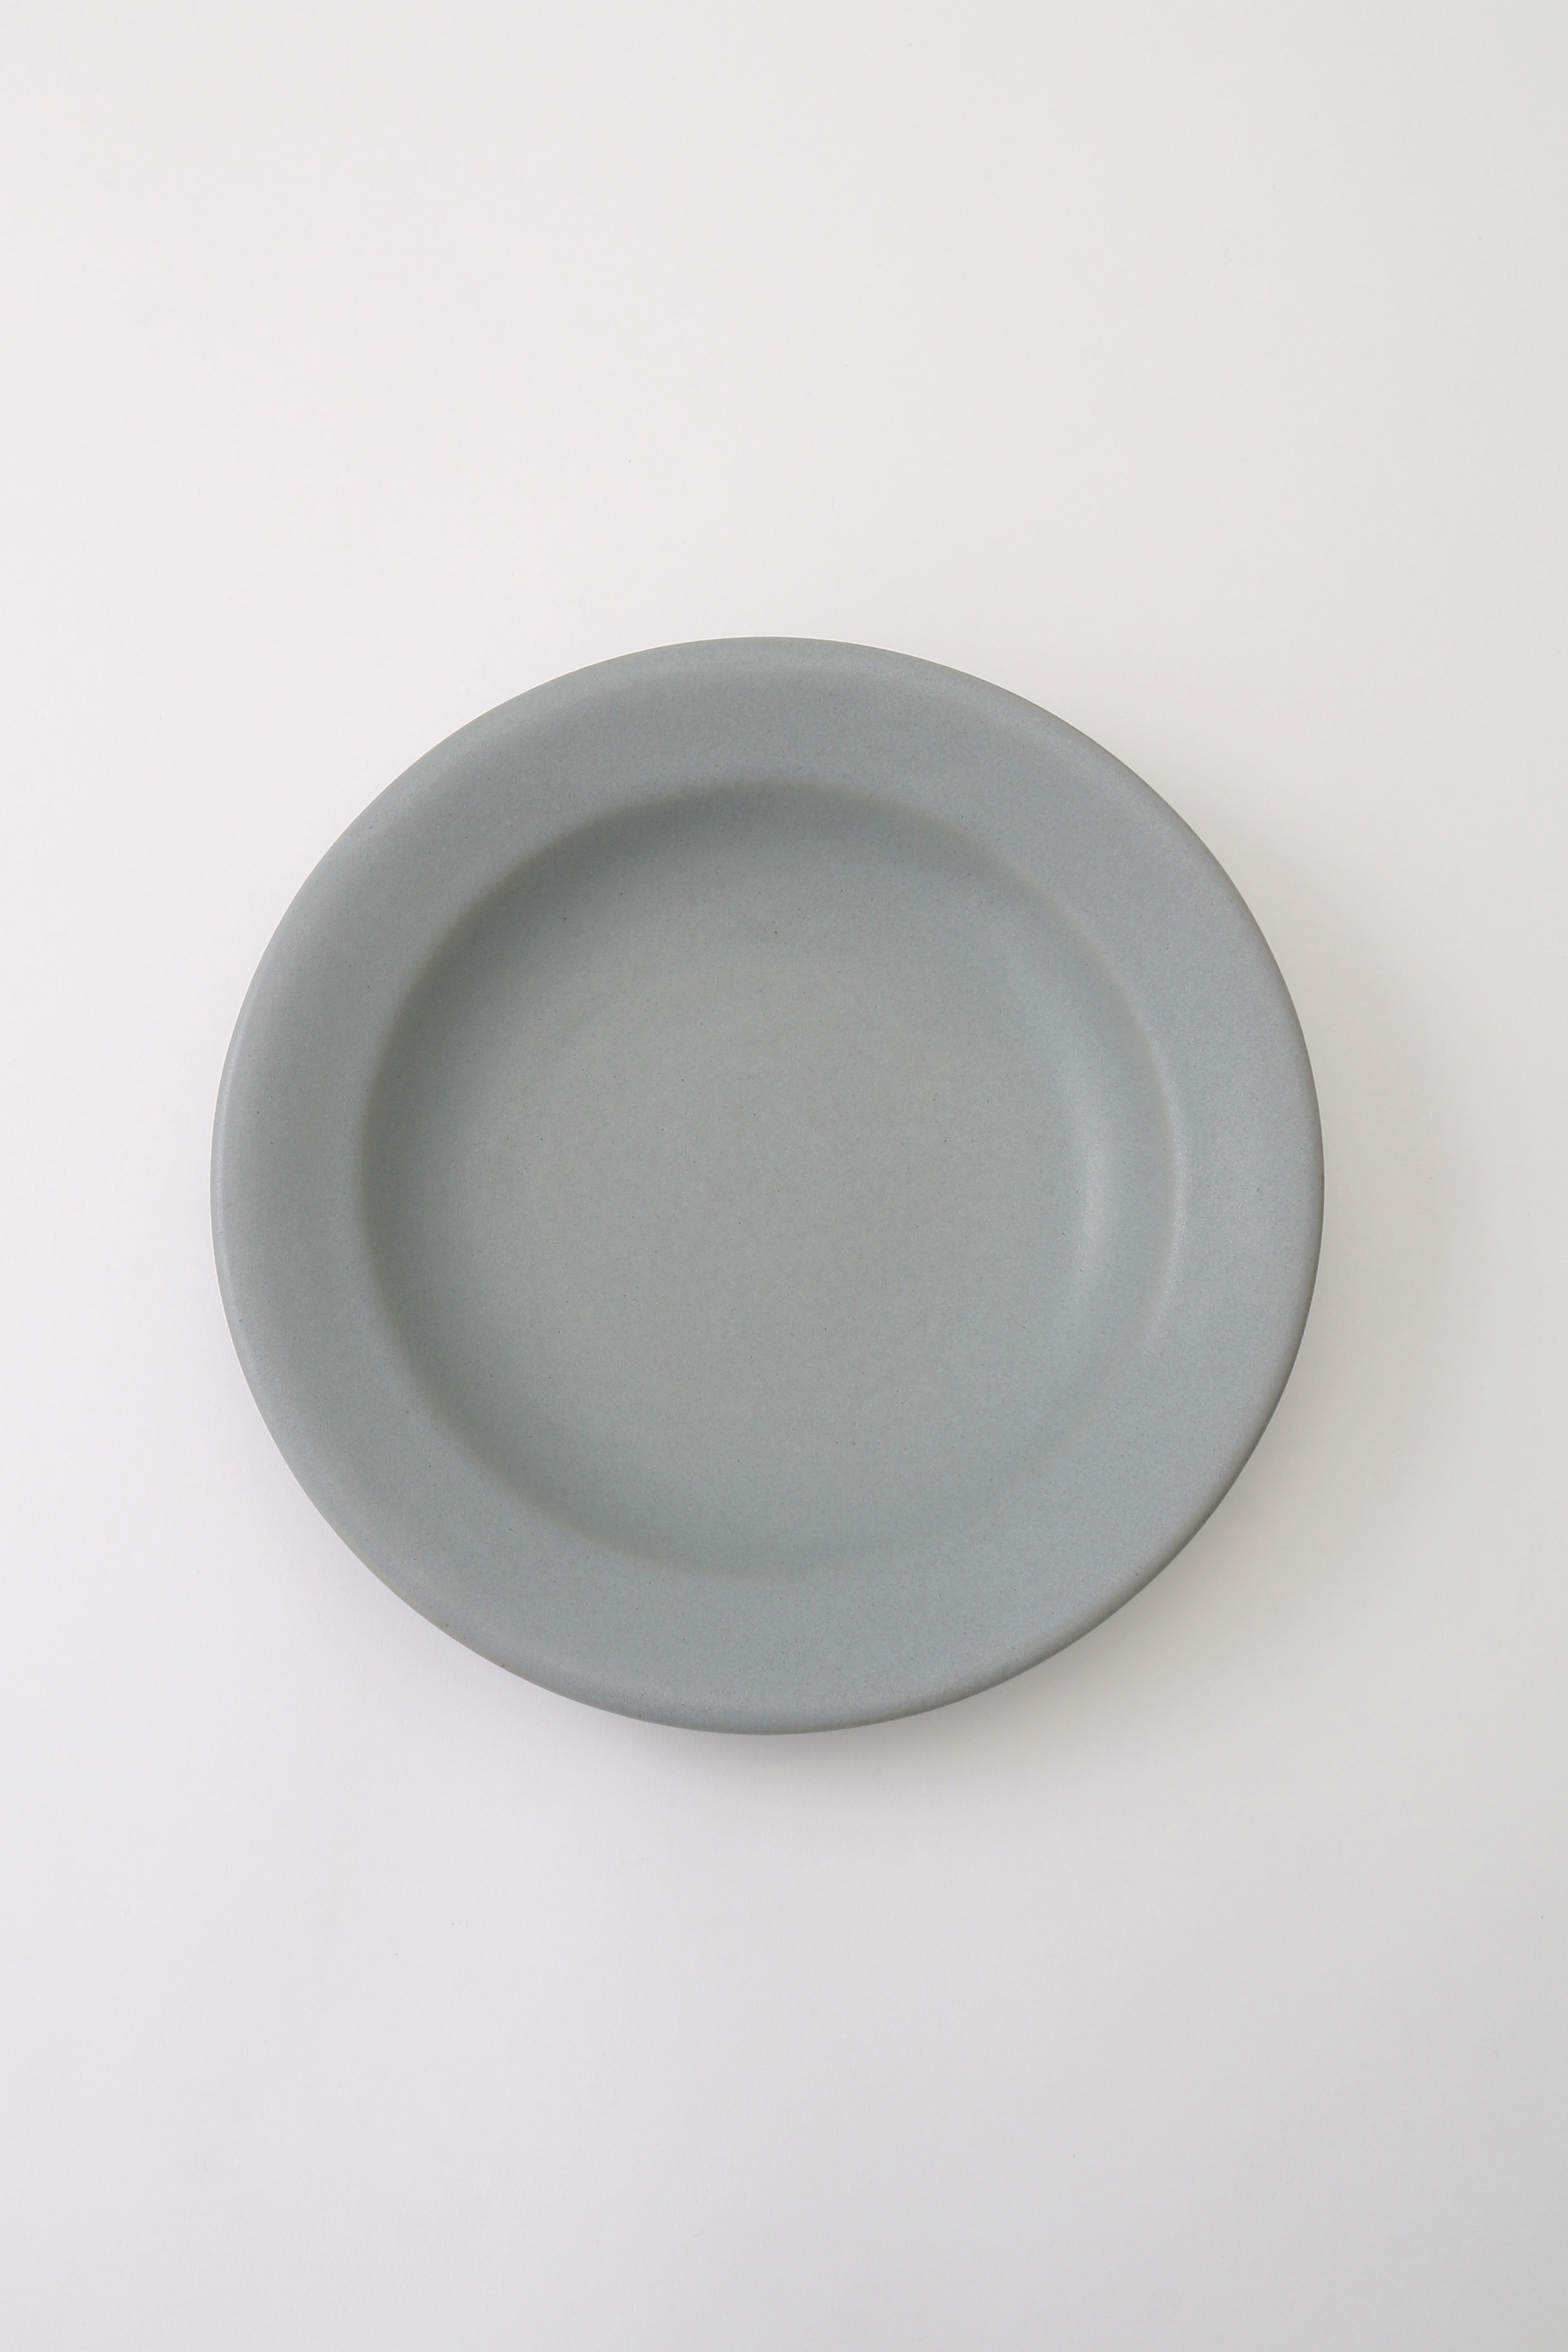 あわびウェア/Awabi wareのパスタ皿(青マット/L01-032)